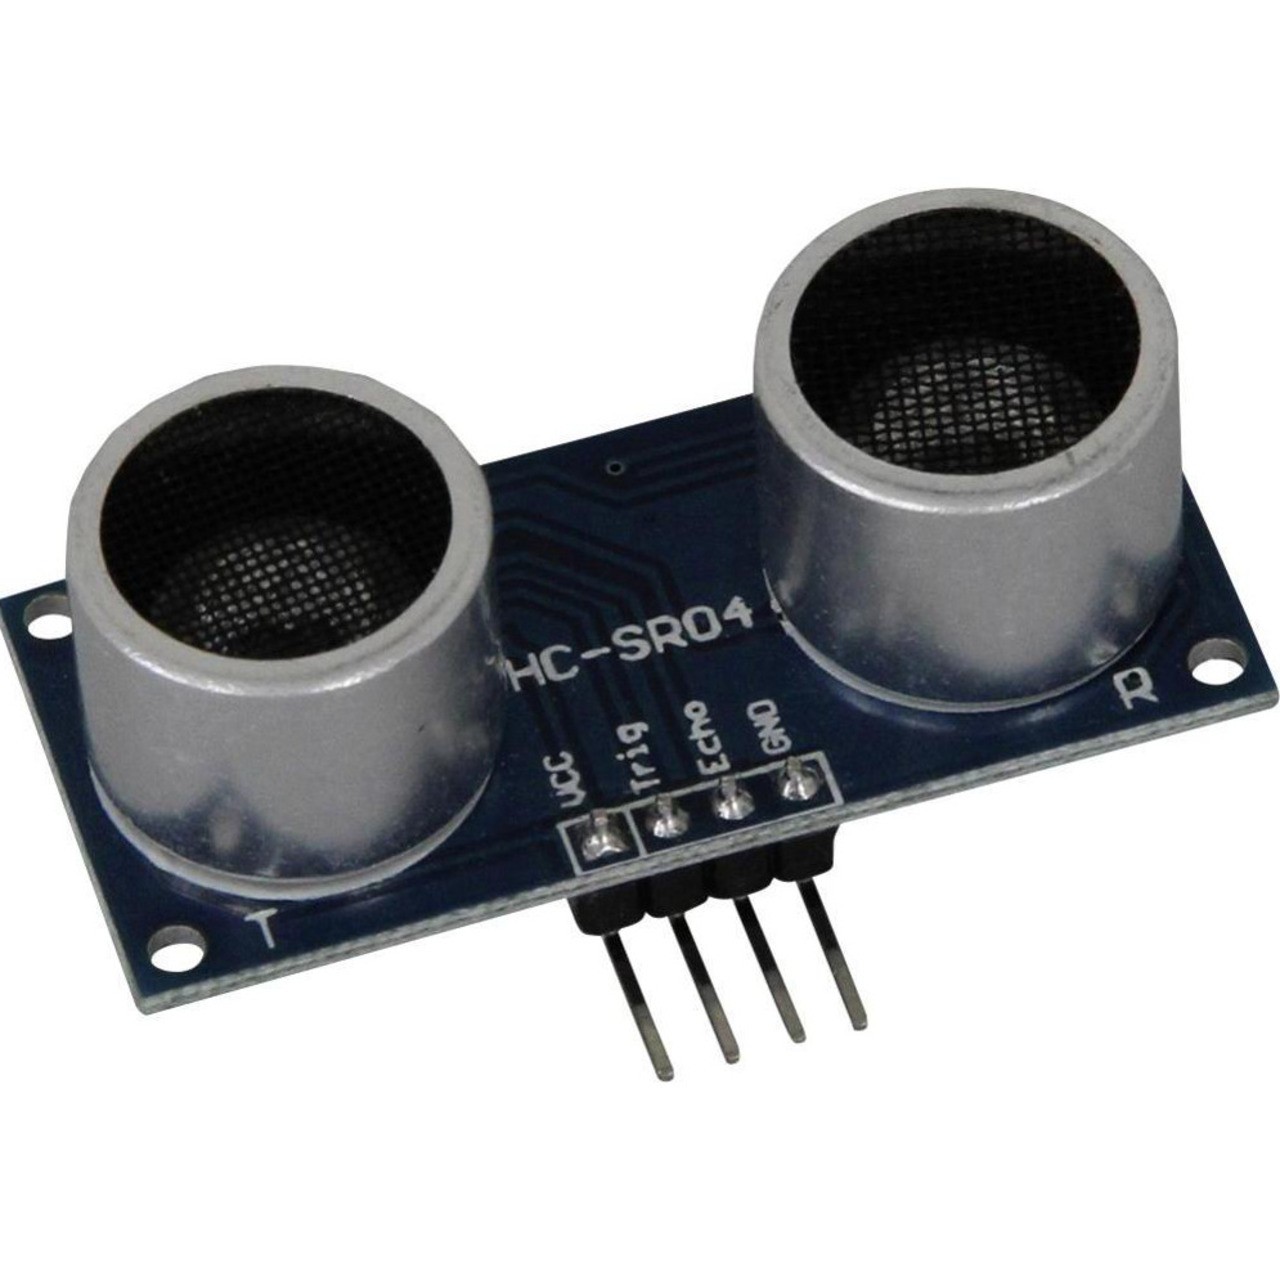 Ultraschall-Abstandssensor HC-SR04 fr Minicomputer wie Raspberry Pi- Arduino und Co-